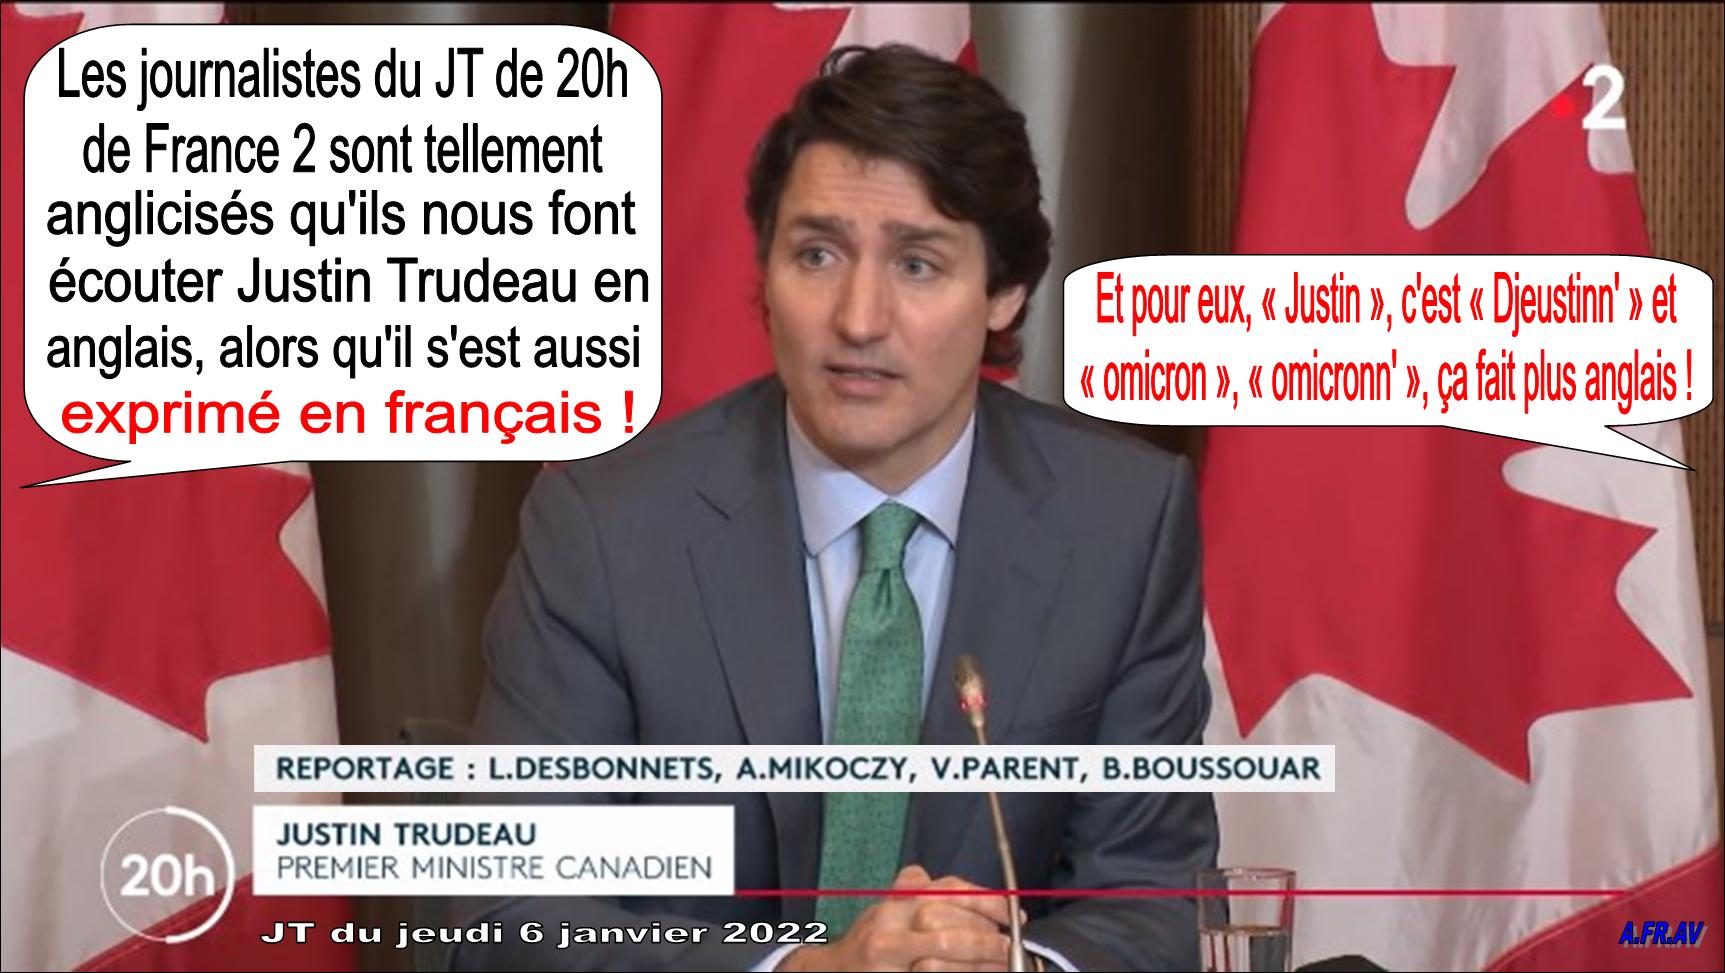 Laurent Desbonnets et Justin Trudeau en anglais au JT de 20h de France 2